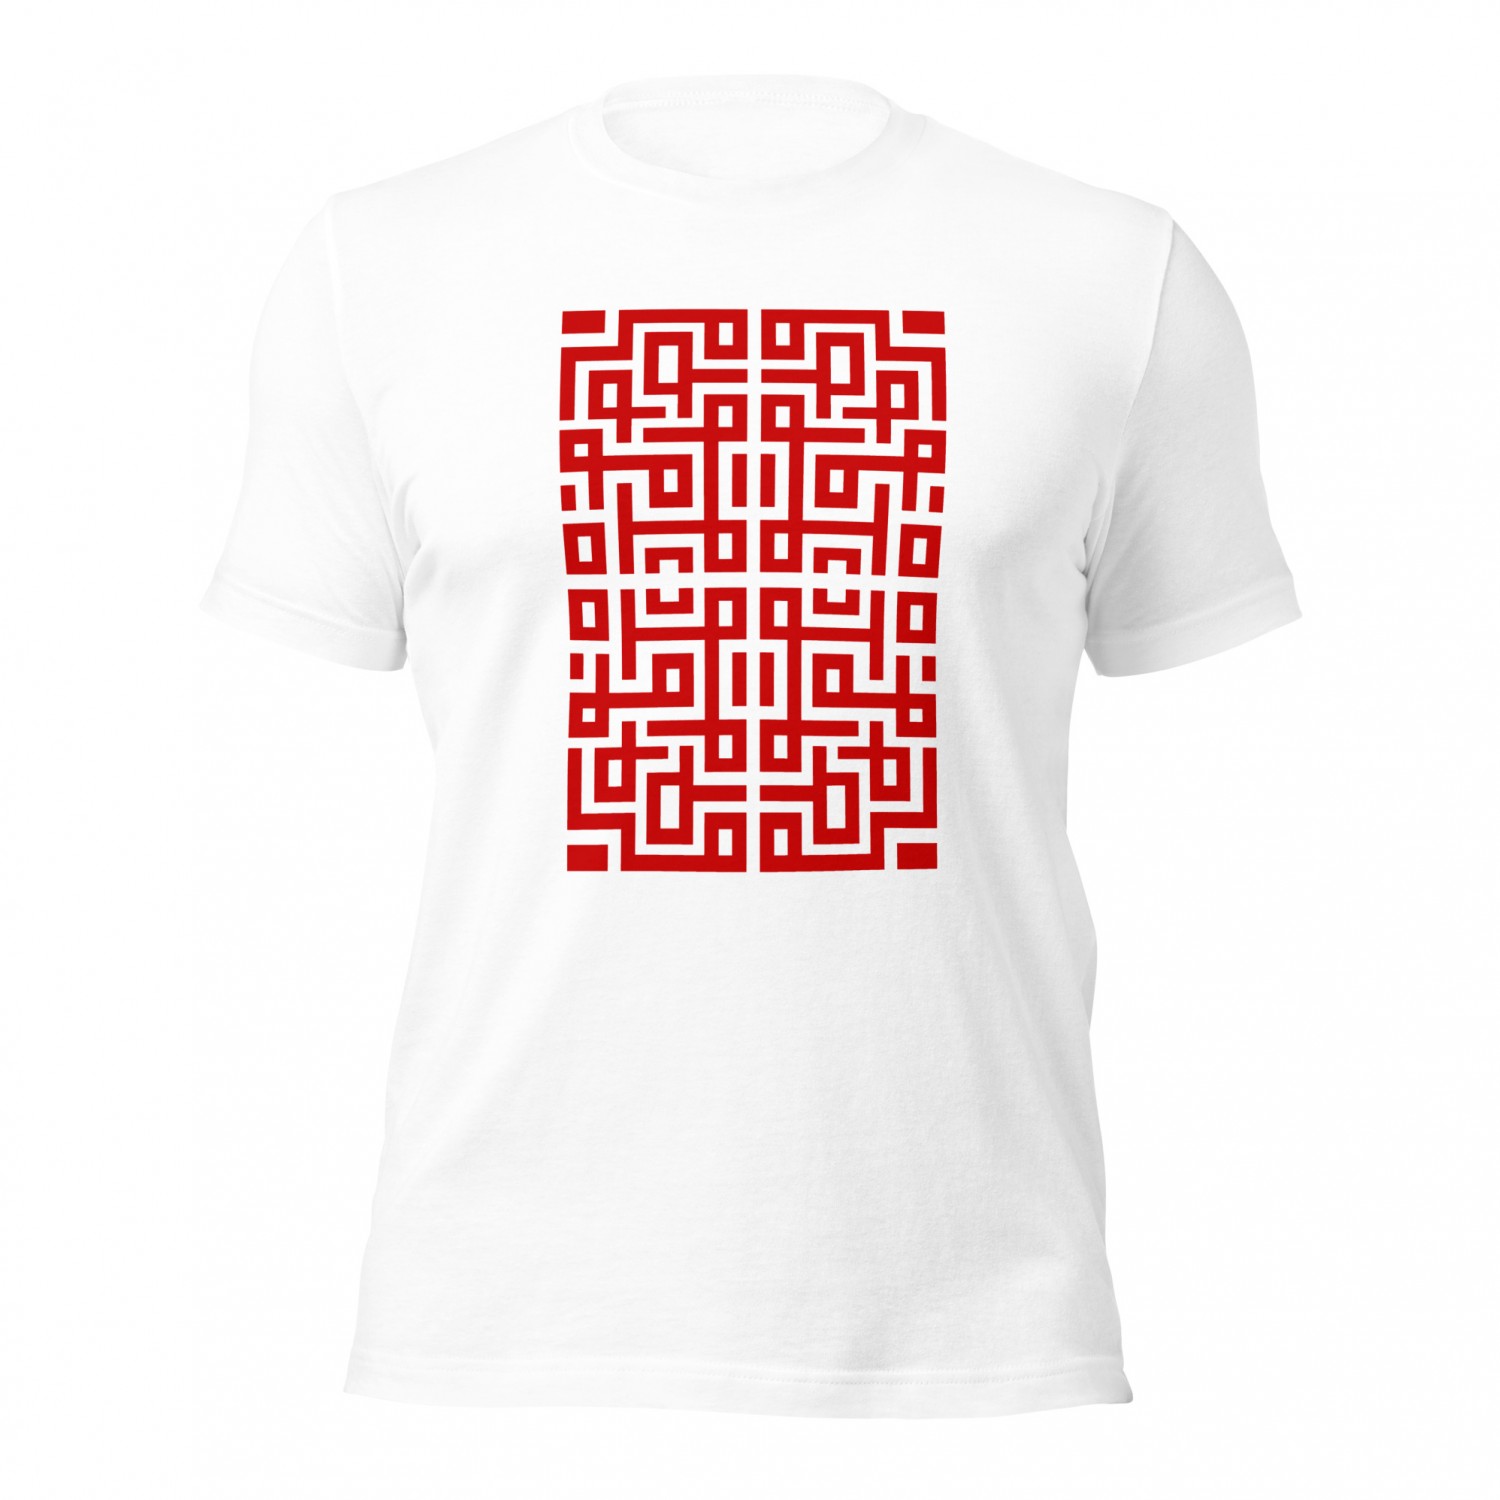 Kup koszulkę ze słowiańskim wzorem